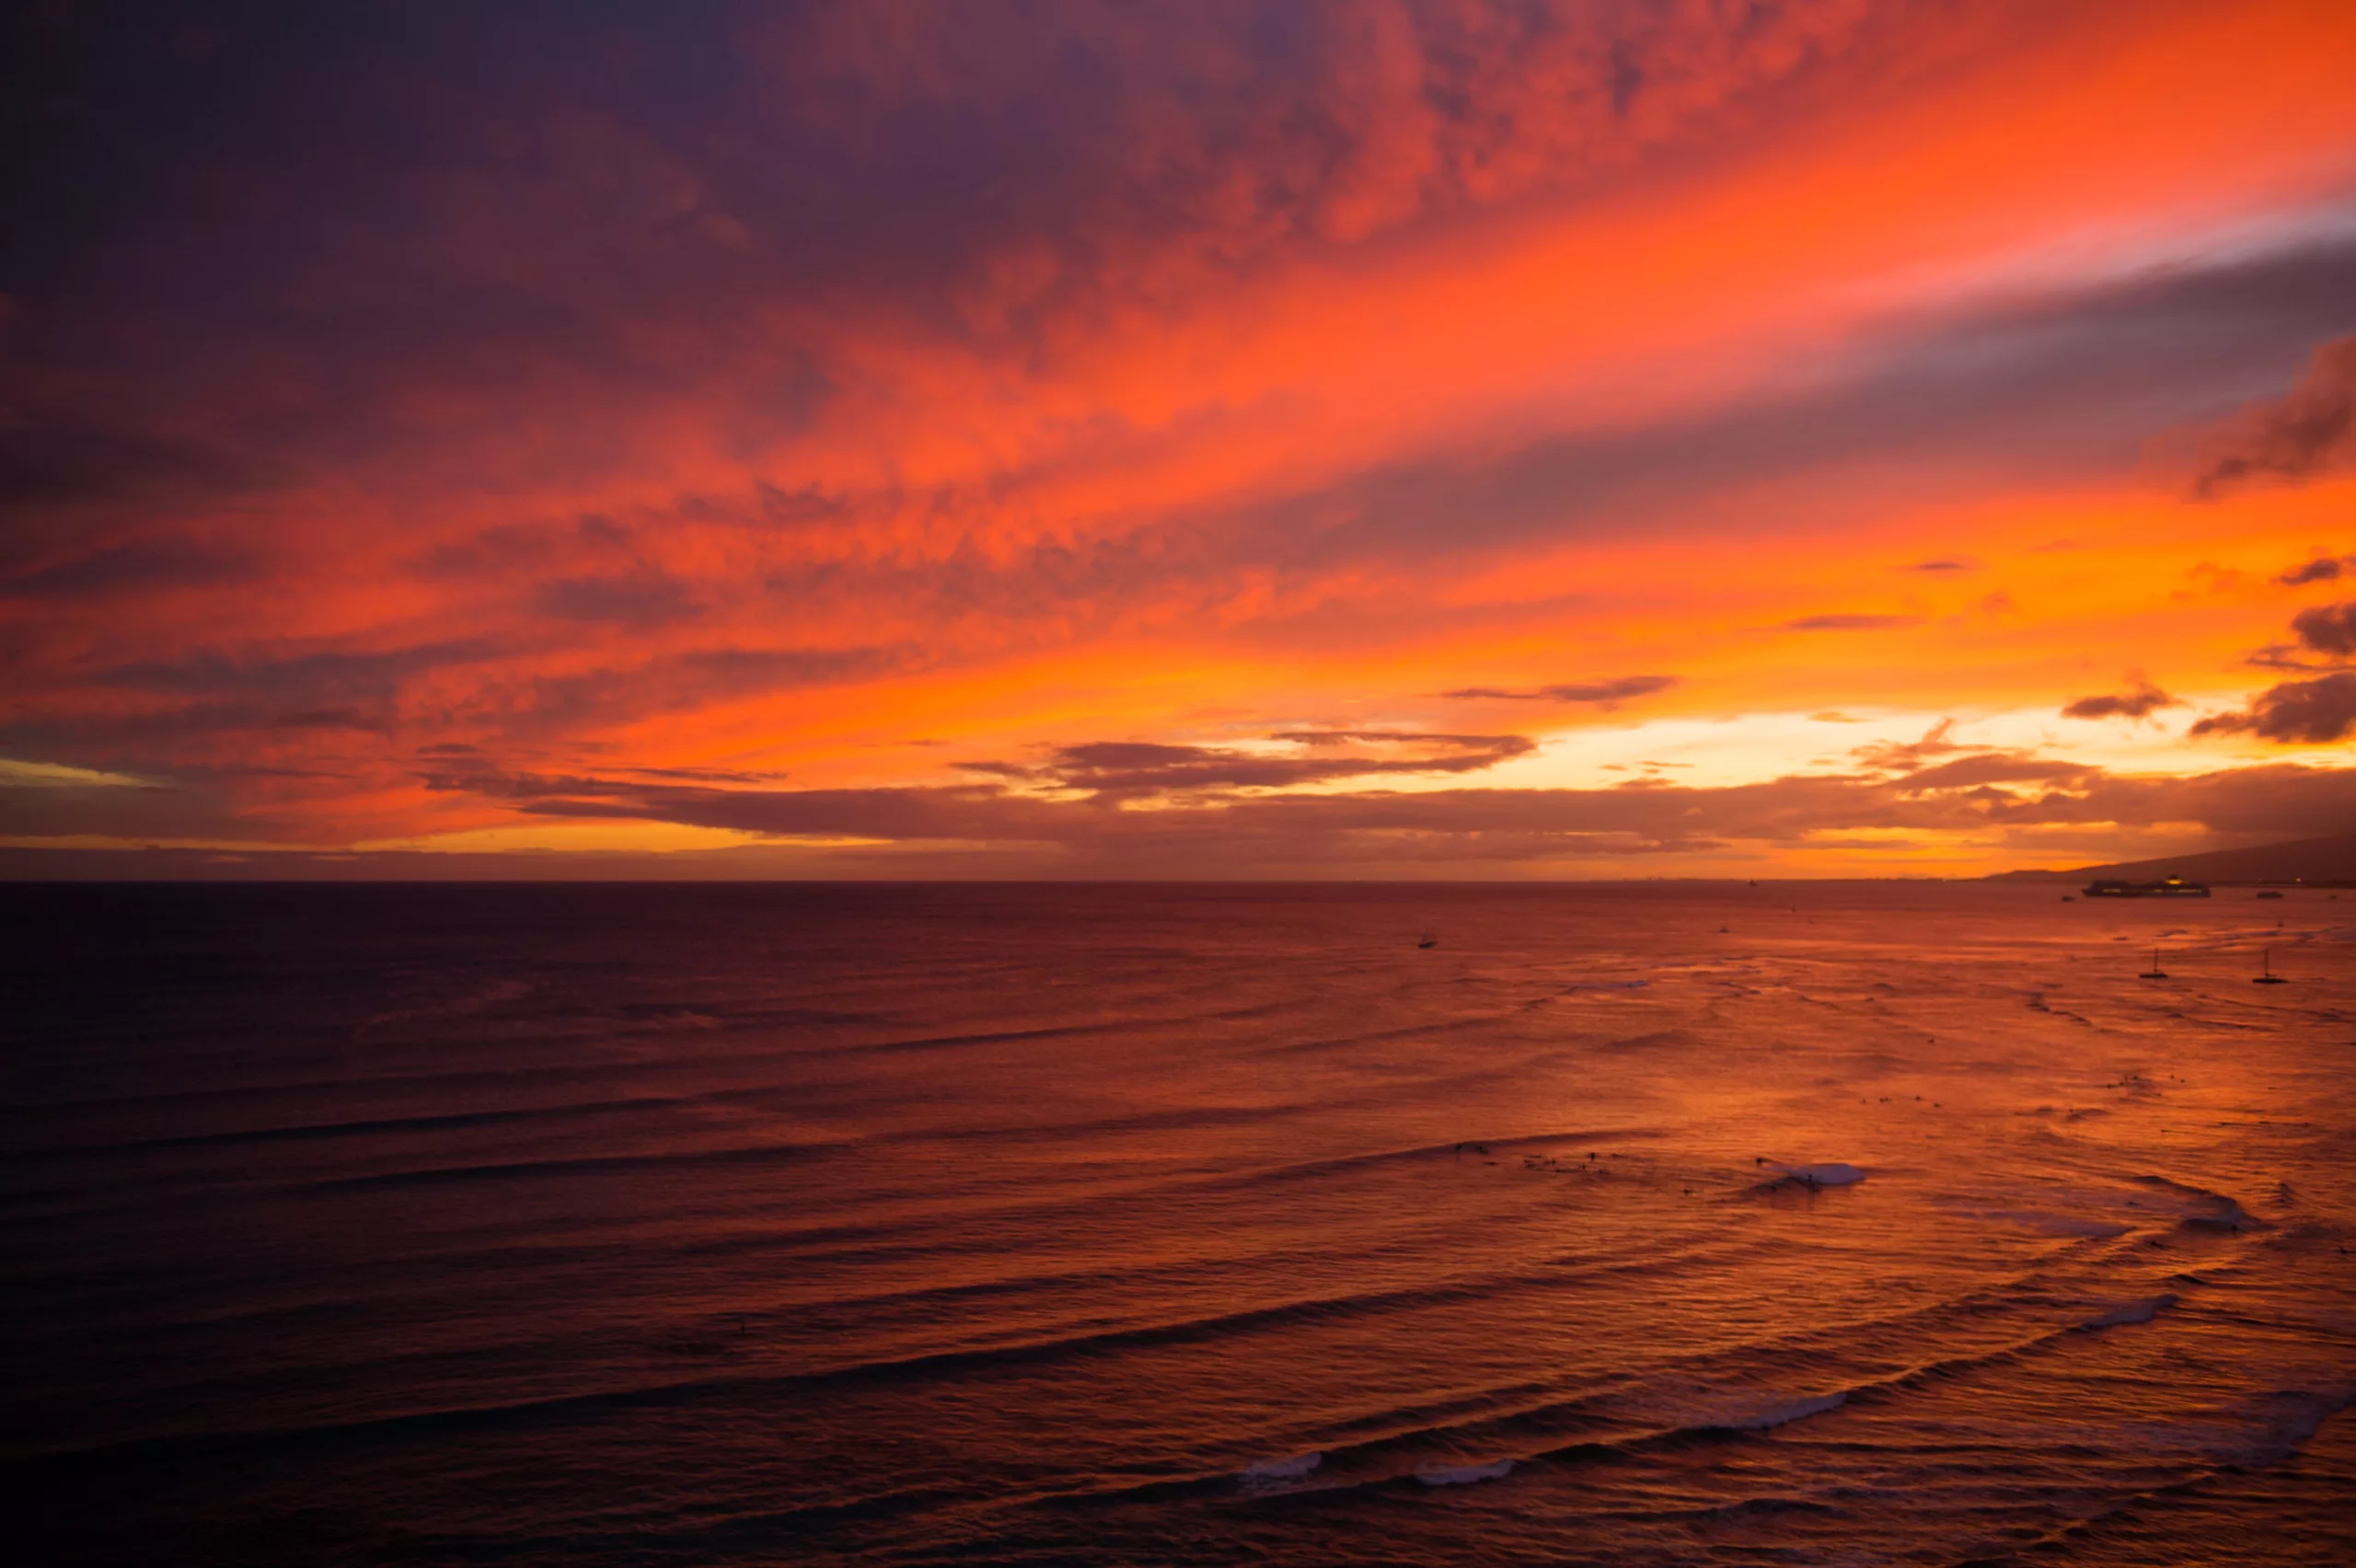 an image of the waikiki sunset taken by waikiki hawaii photographer